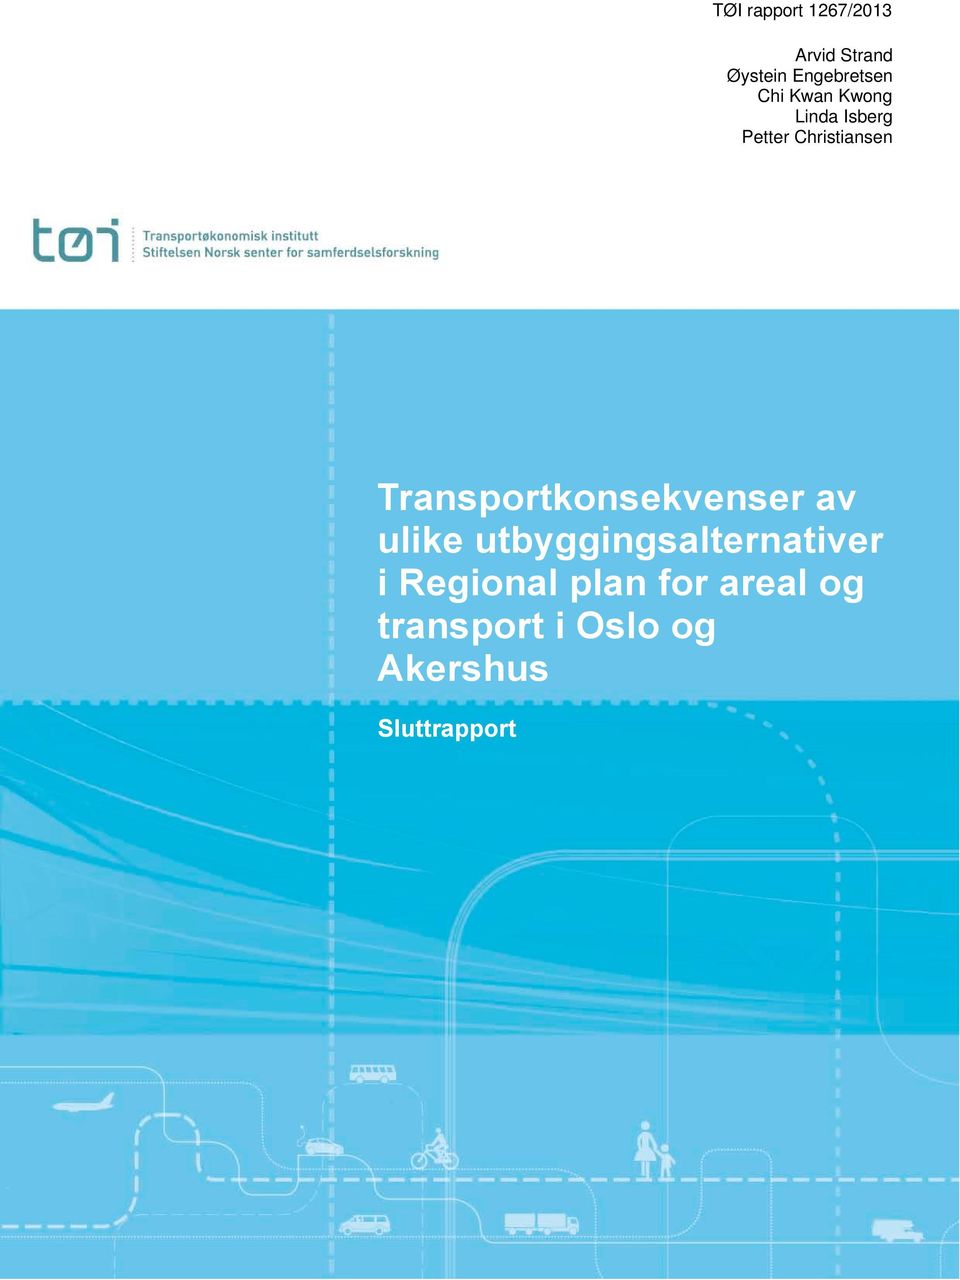 Transportkonsekvenser av ulike utbyggingsalternativer i